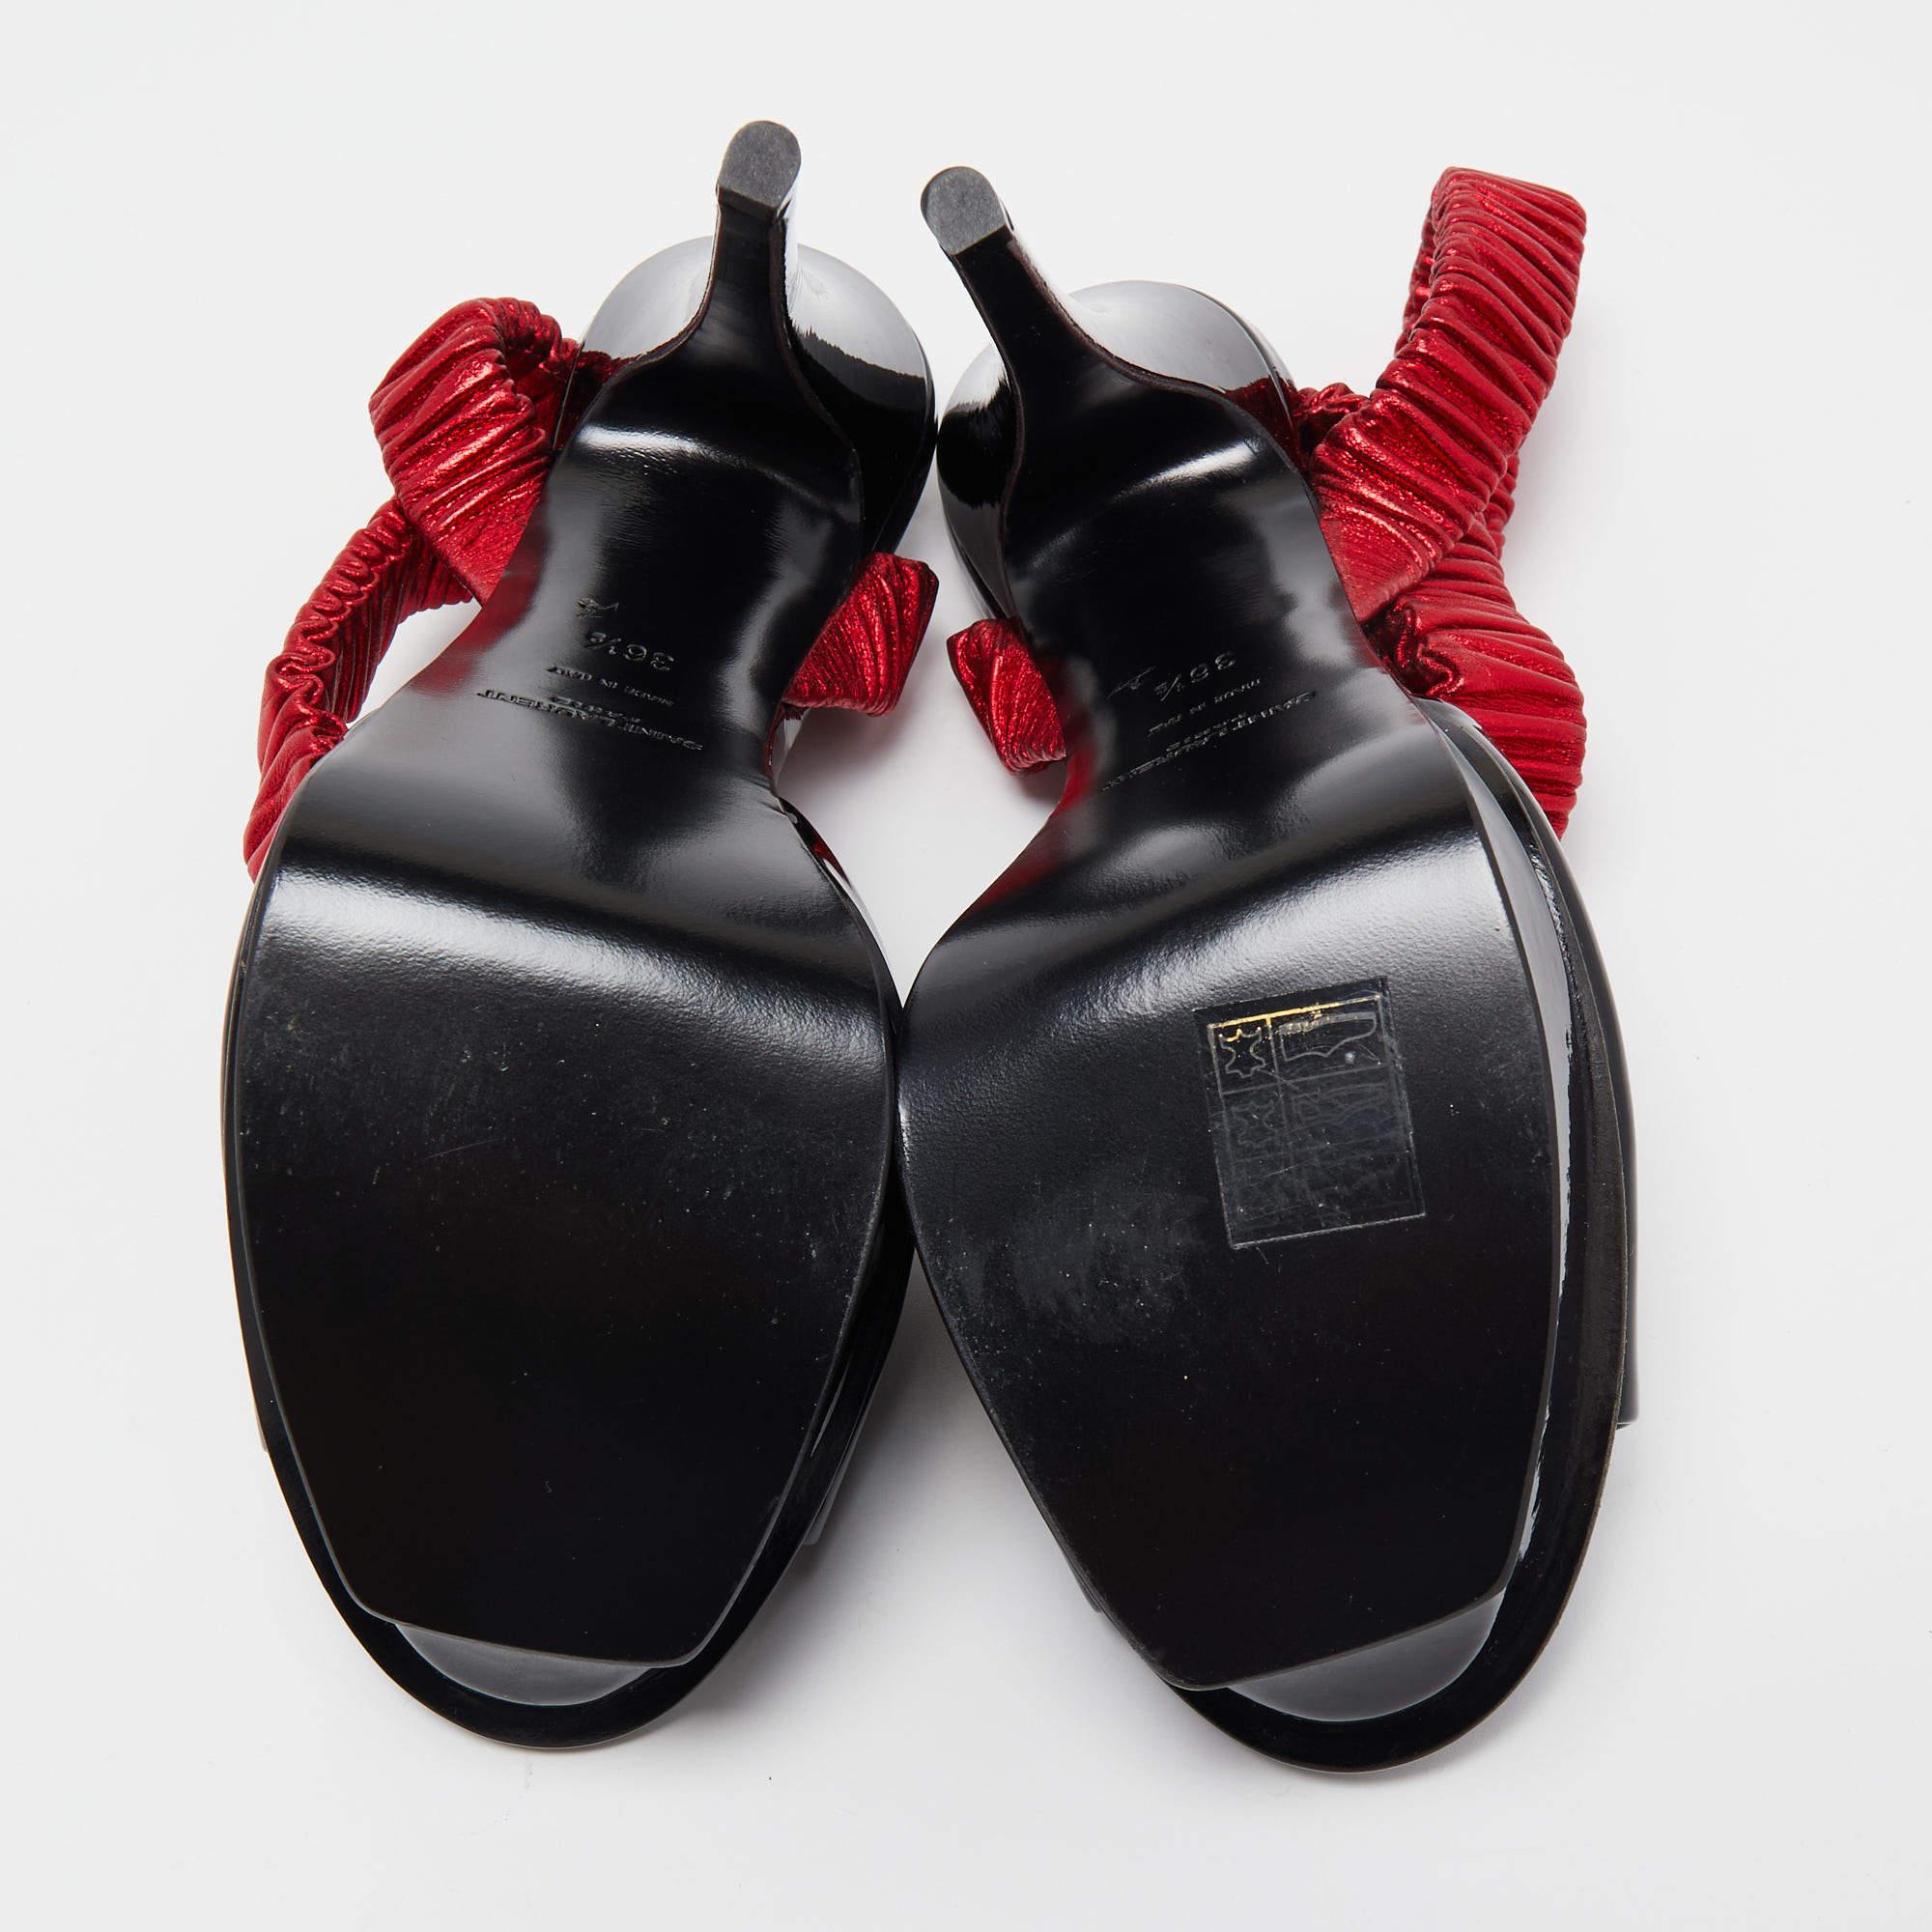 Saint Laurent Black Patent Leather Platform Ankle Wrap Sandals Size 36.5 1